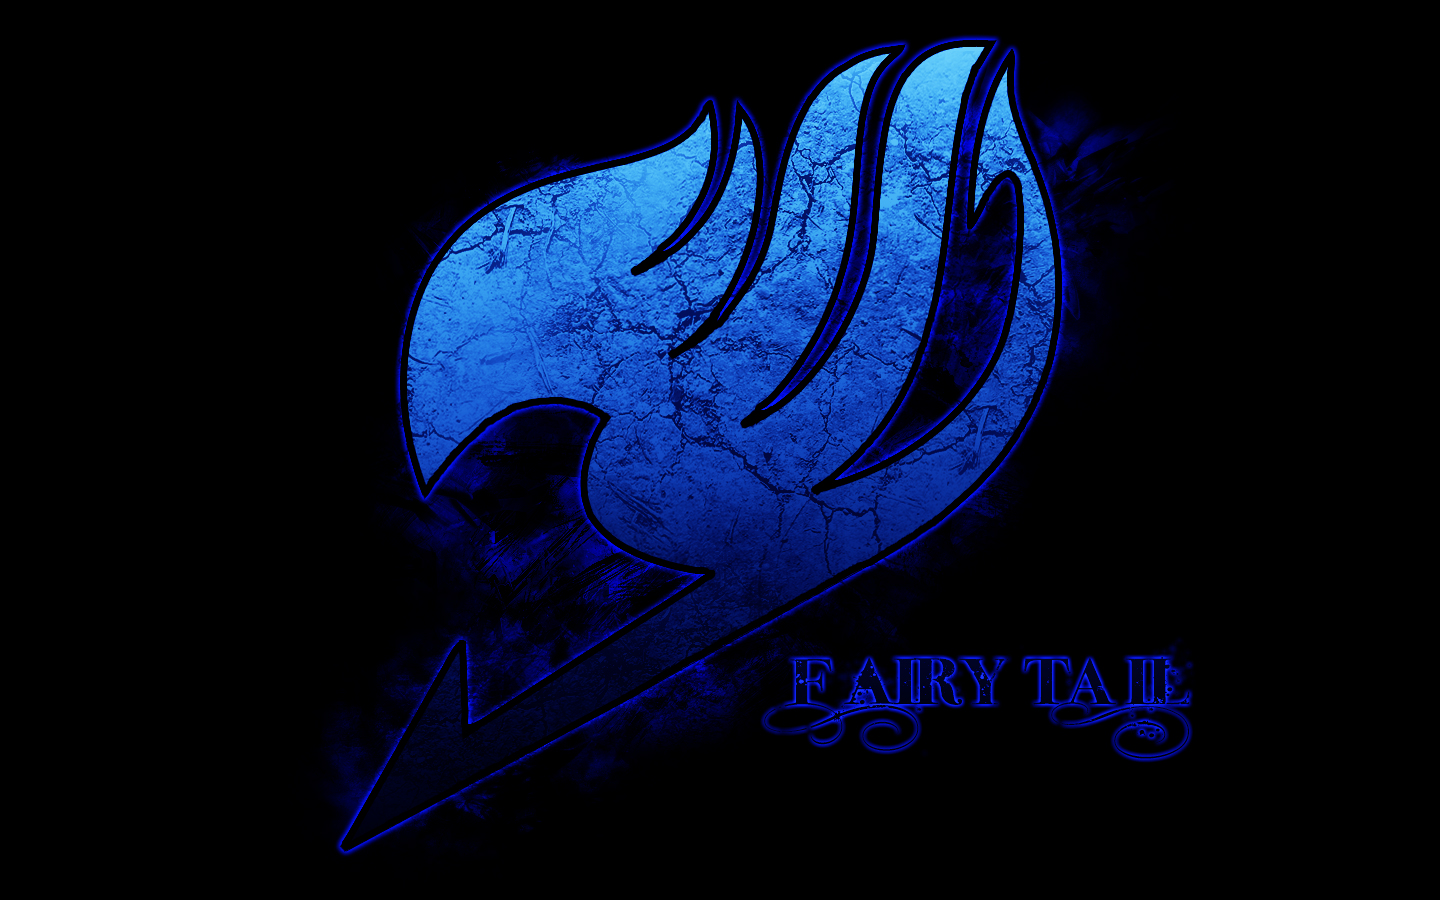 http://4.bp.blogspot.com/_M8cK-FvGjq0/TMKN13zH5zI/AAAAAAAAAFw/s059eoThRgE/s1600/Fairy-Tail-logo-001.jpg